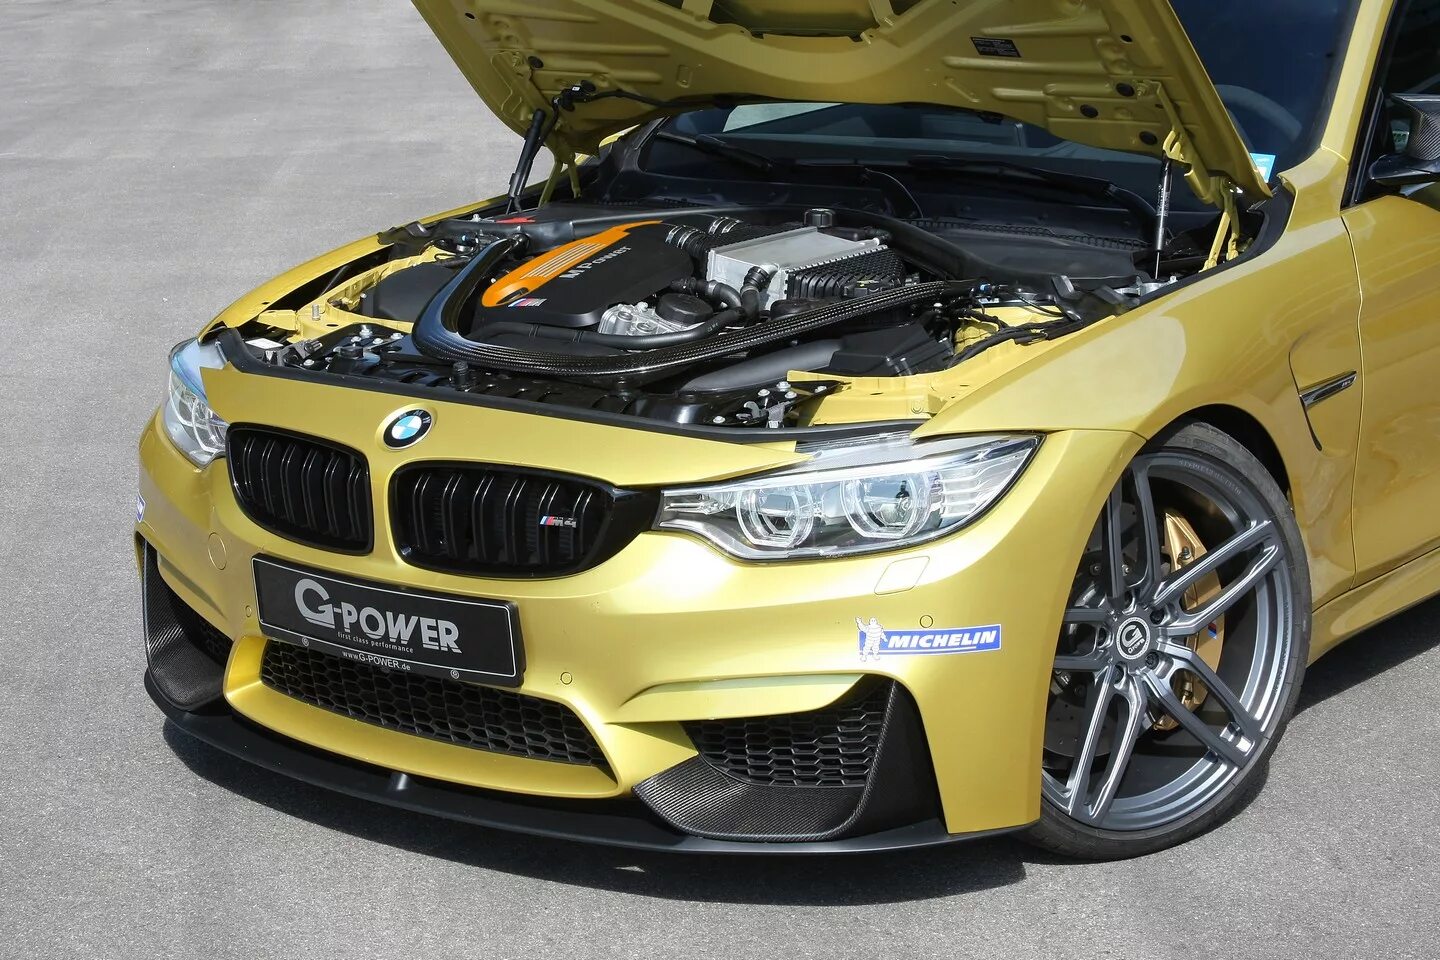 BMW m4 f82. G Power BMW m4. BMW m4 2000. BMW m4 f82 tuned. Power tuning